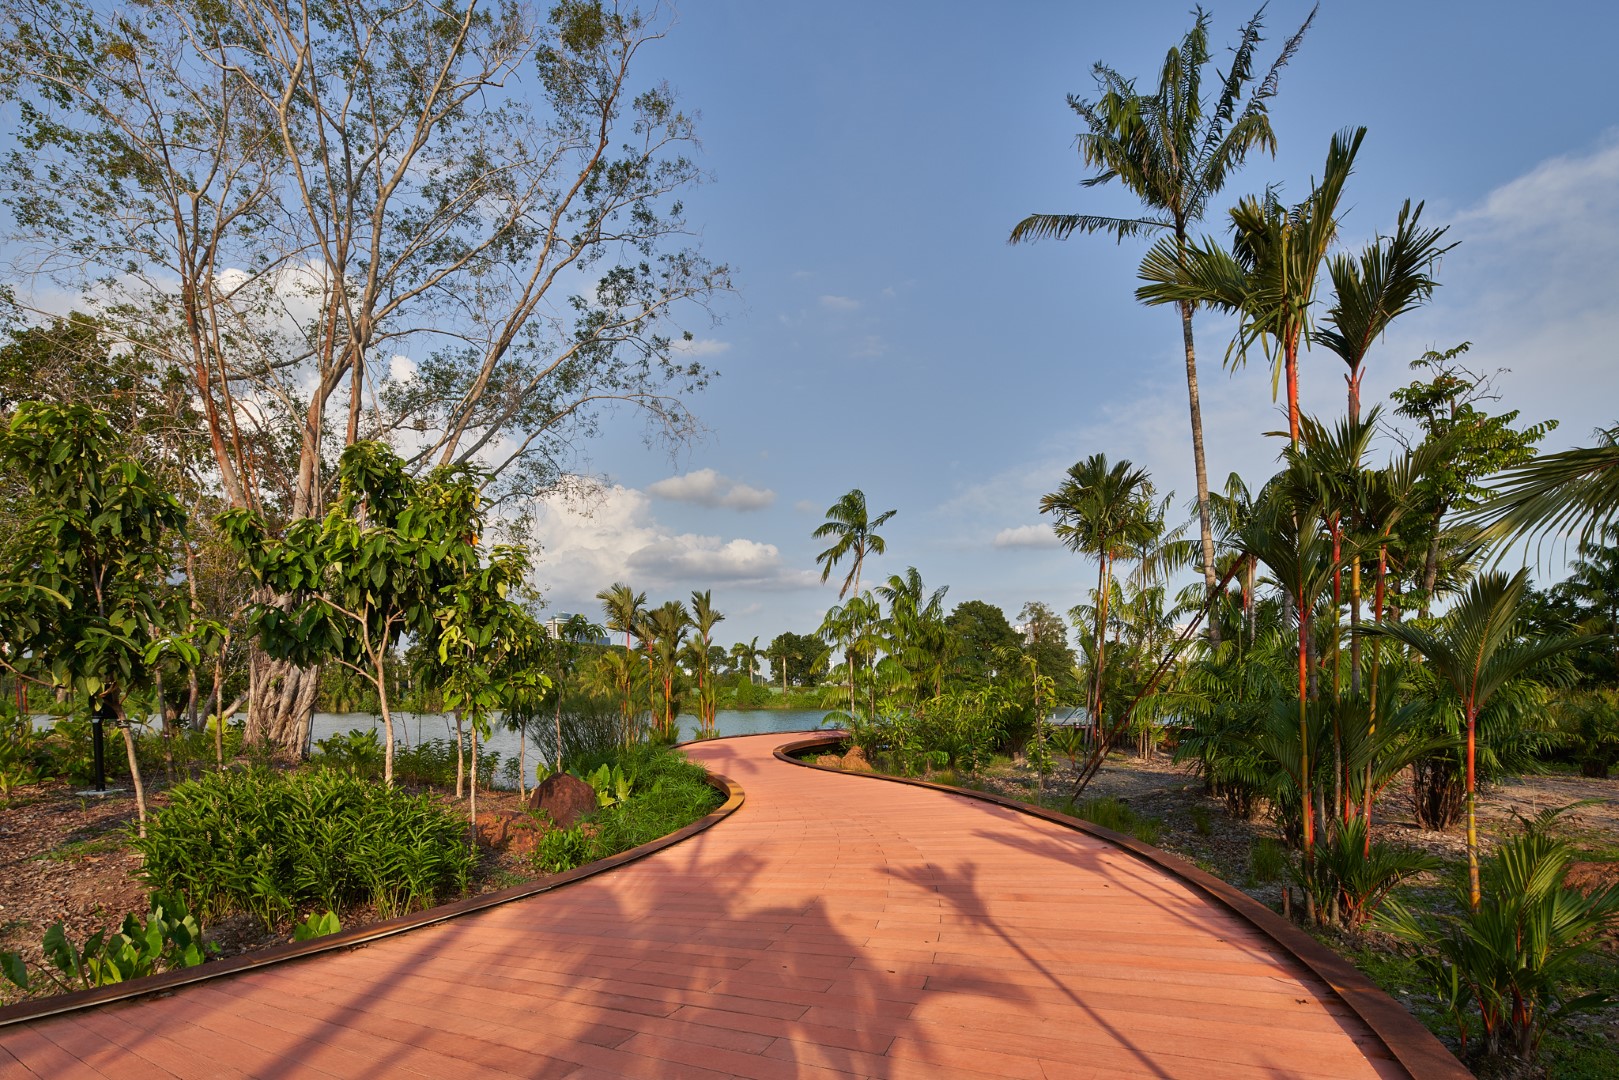 Rasau Walk, Lakeside Gardens at Jurong Lake Gardens, Singapore